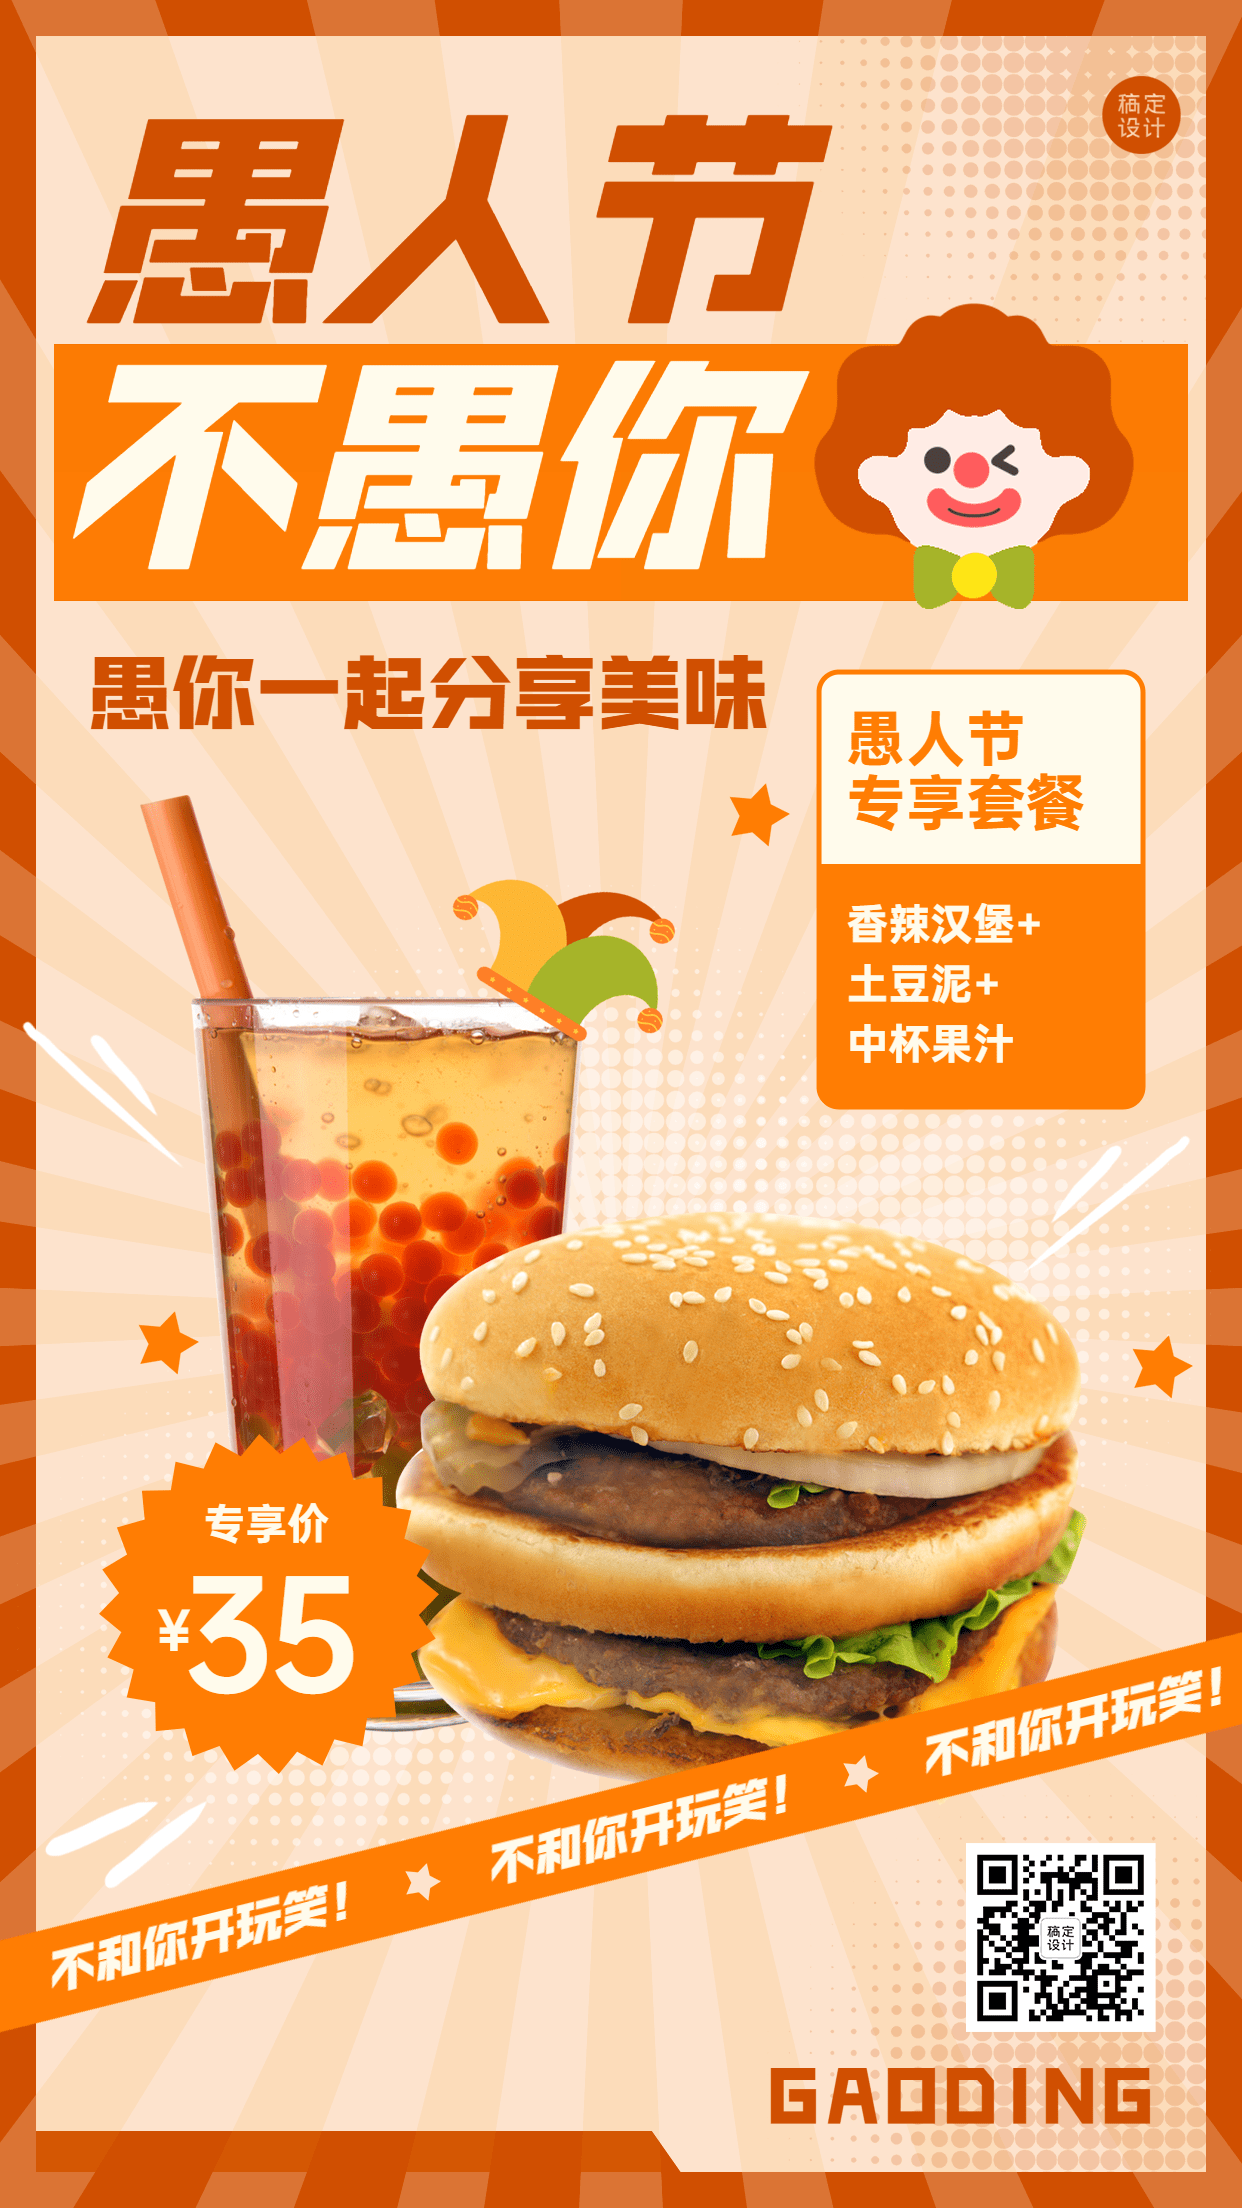 愚人节汉堡炸鸡营销促销餐饮手机海报预览效果